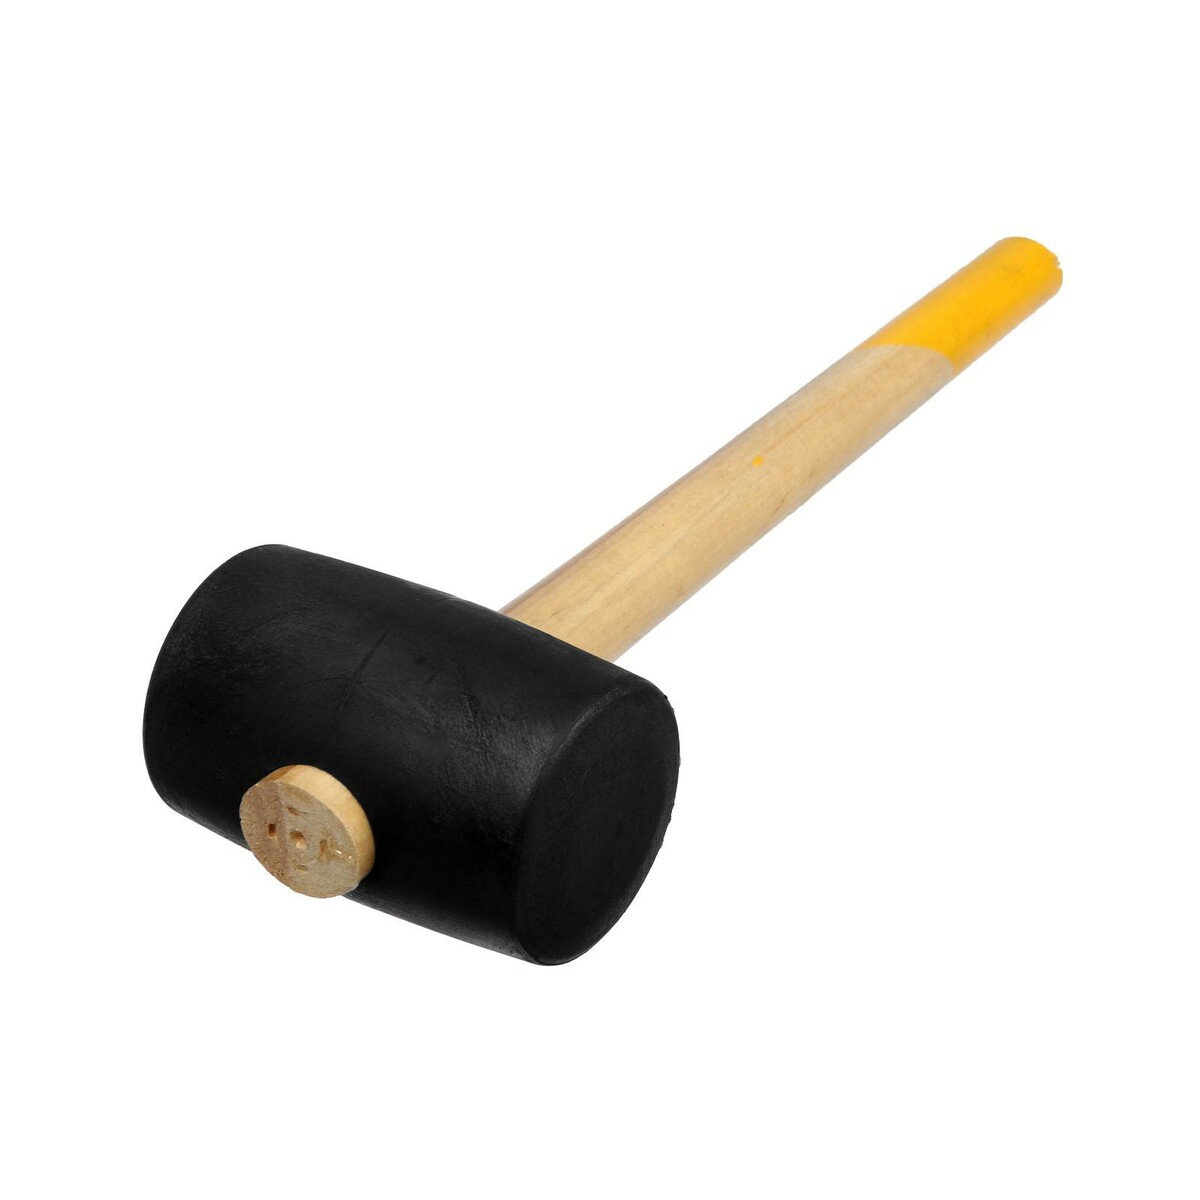 Киянка тундра, деревянная рукоятка, черная резина, 65 мм, 680 г киянка тундра деревянная рукоятка черная резина 450 г